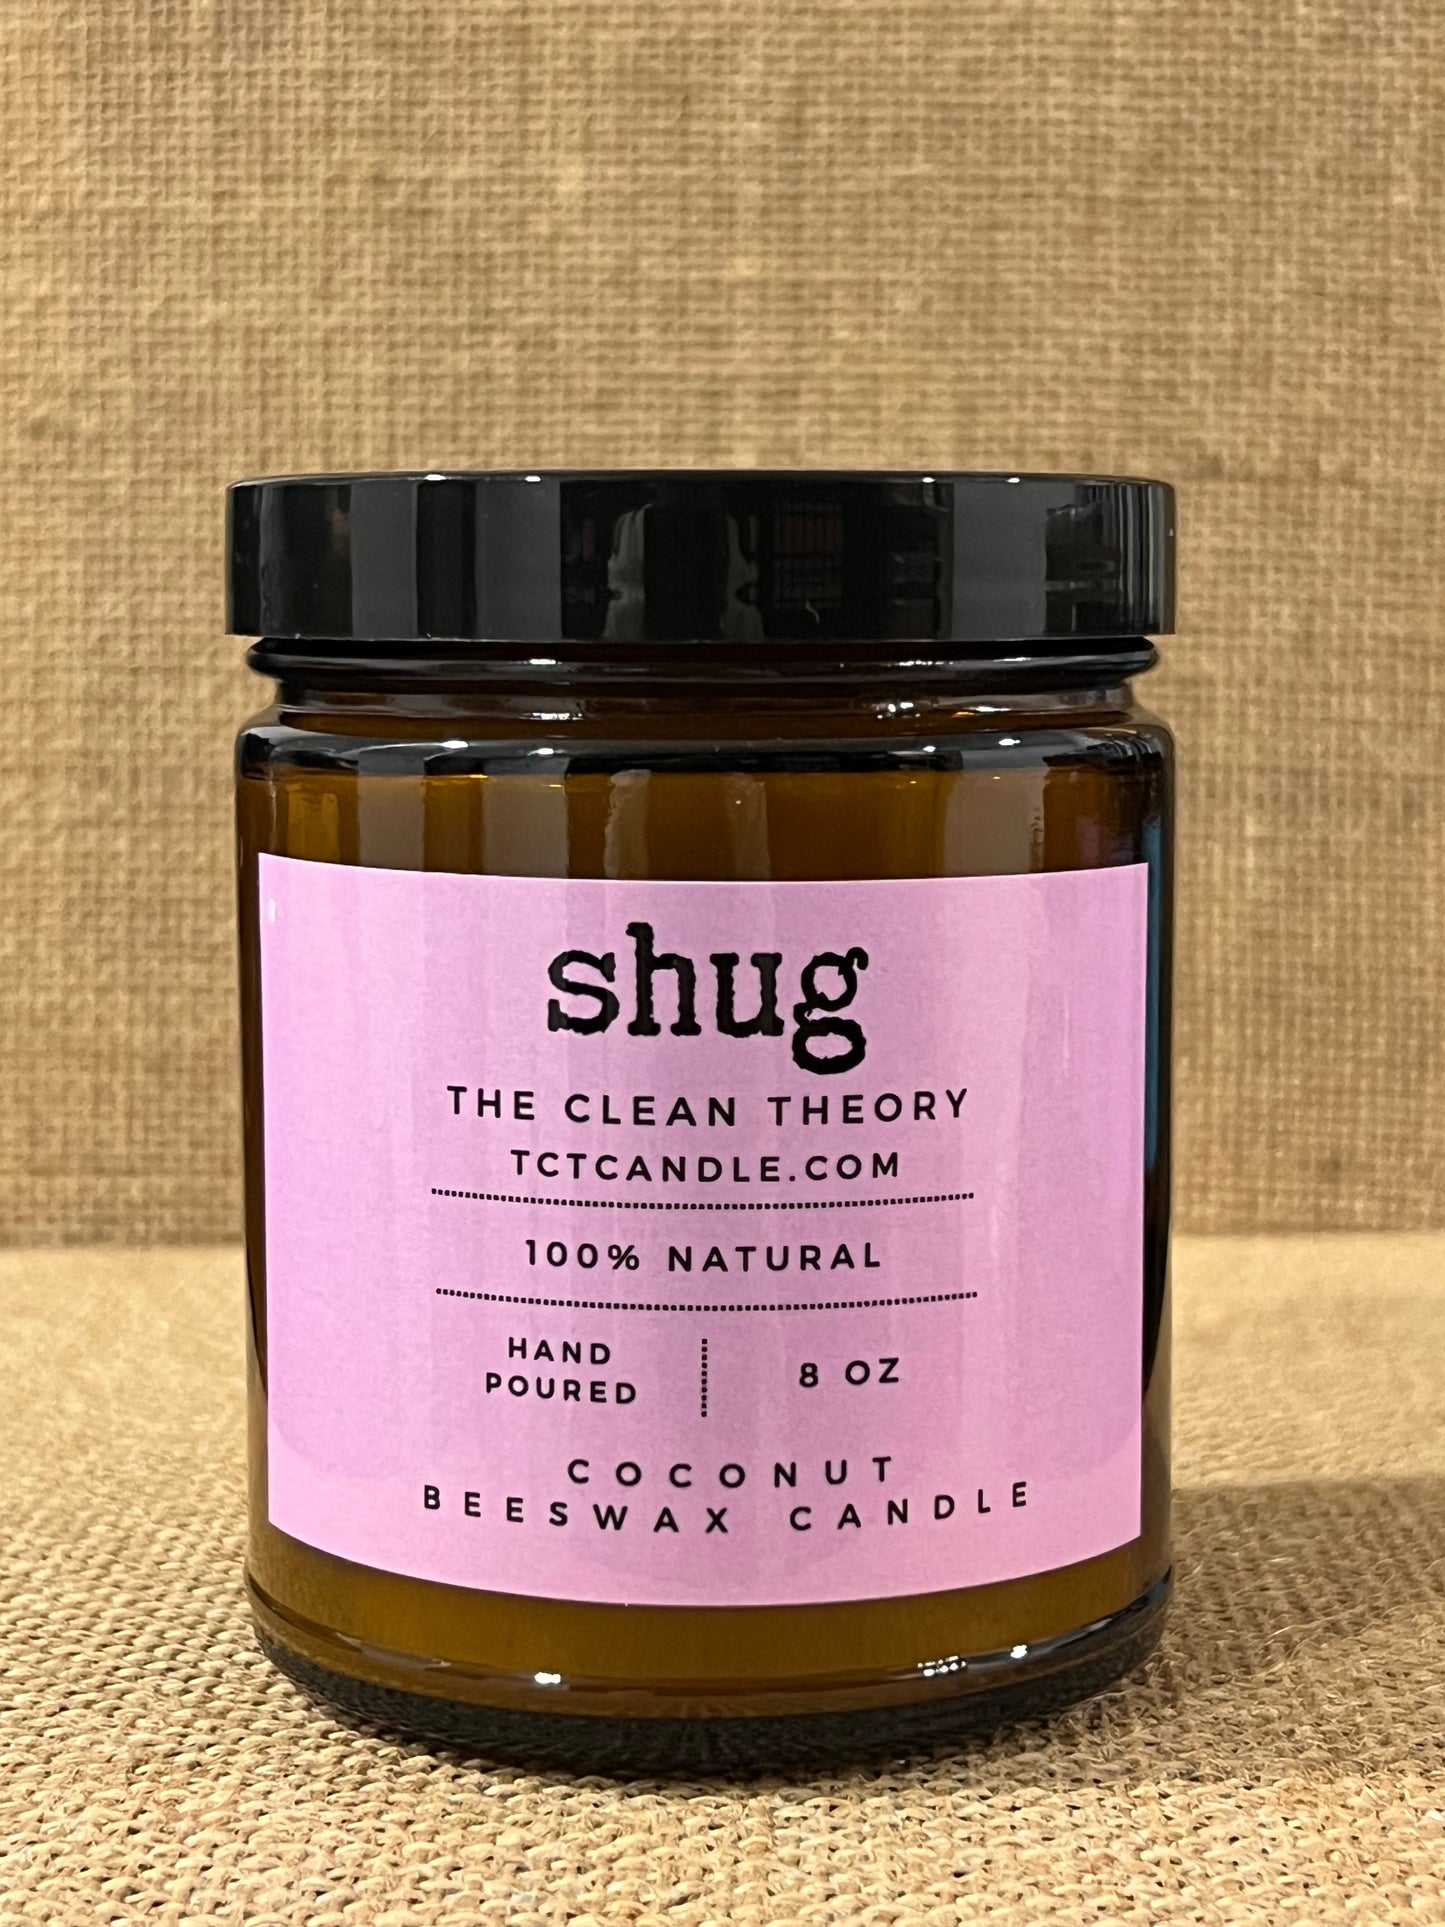 SHUG - Sweet cream, maraschino cherry, vanilla, and sandalwood